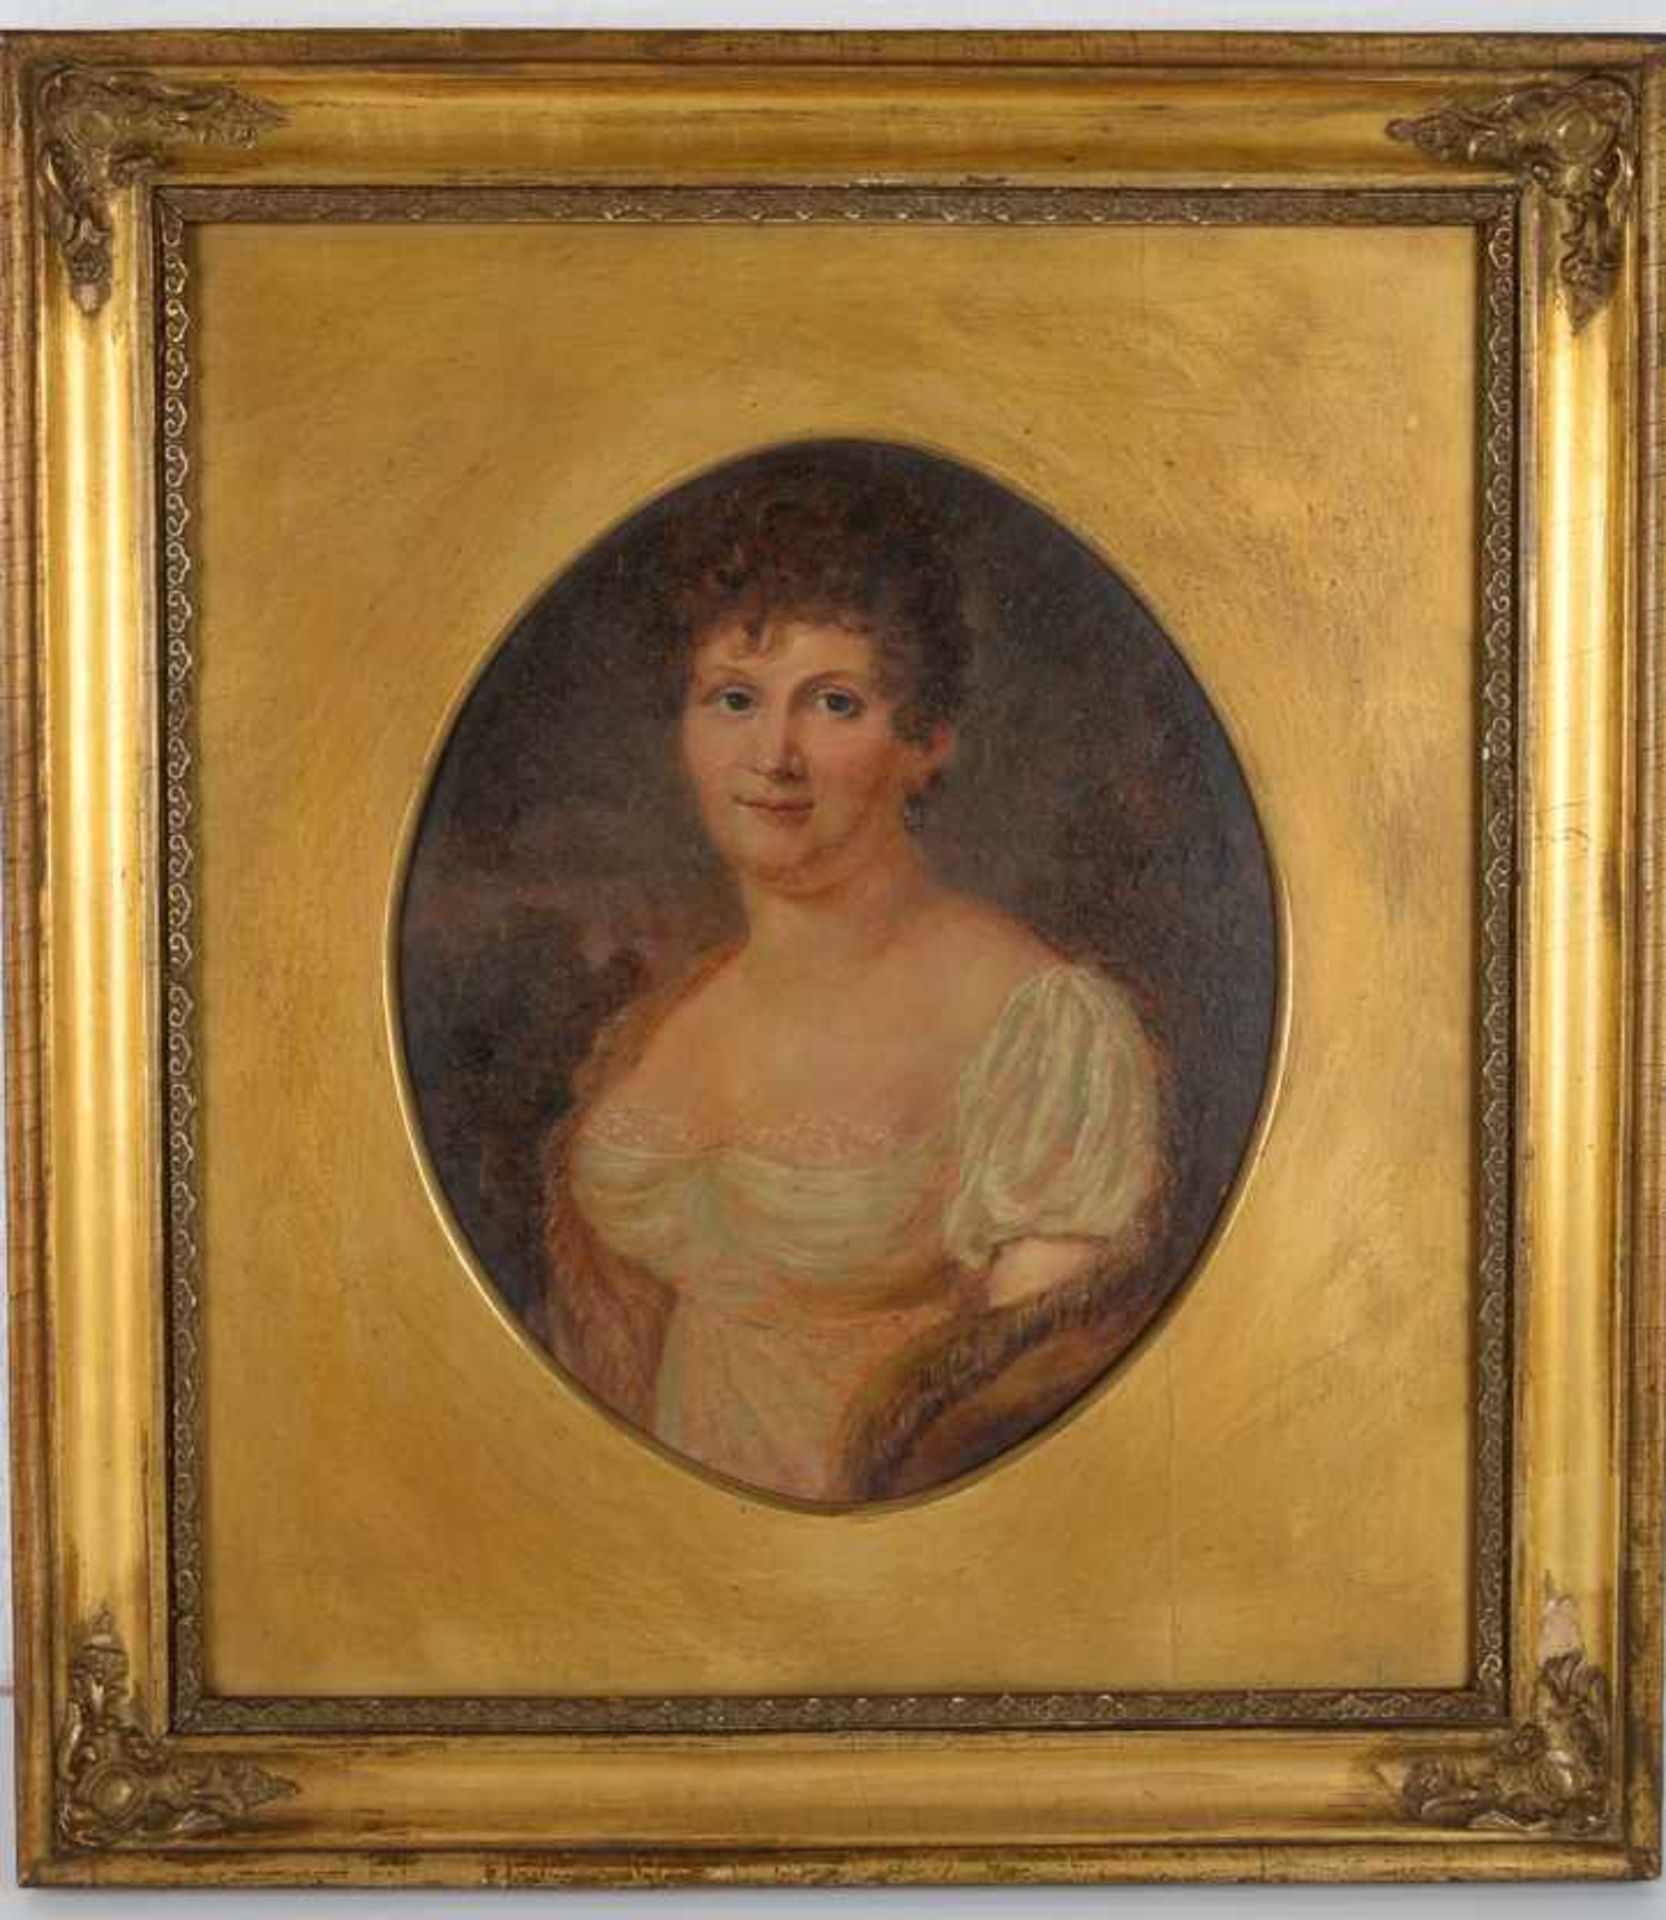 Brustporträt einer Dame mit Ohrring, wohl englisch.Öl auf Malplatte, Datierung um 1900,